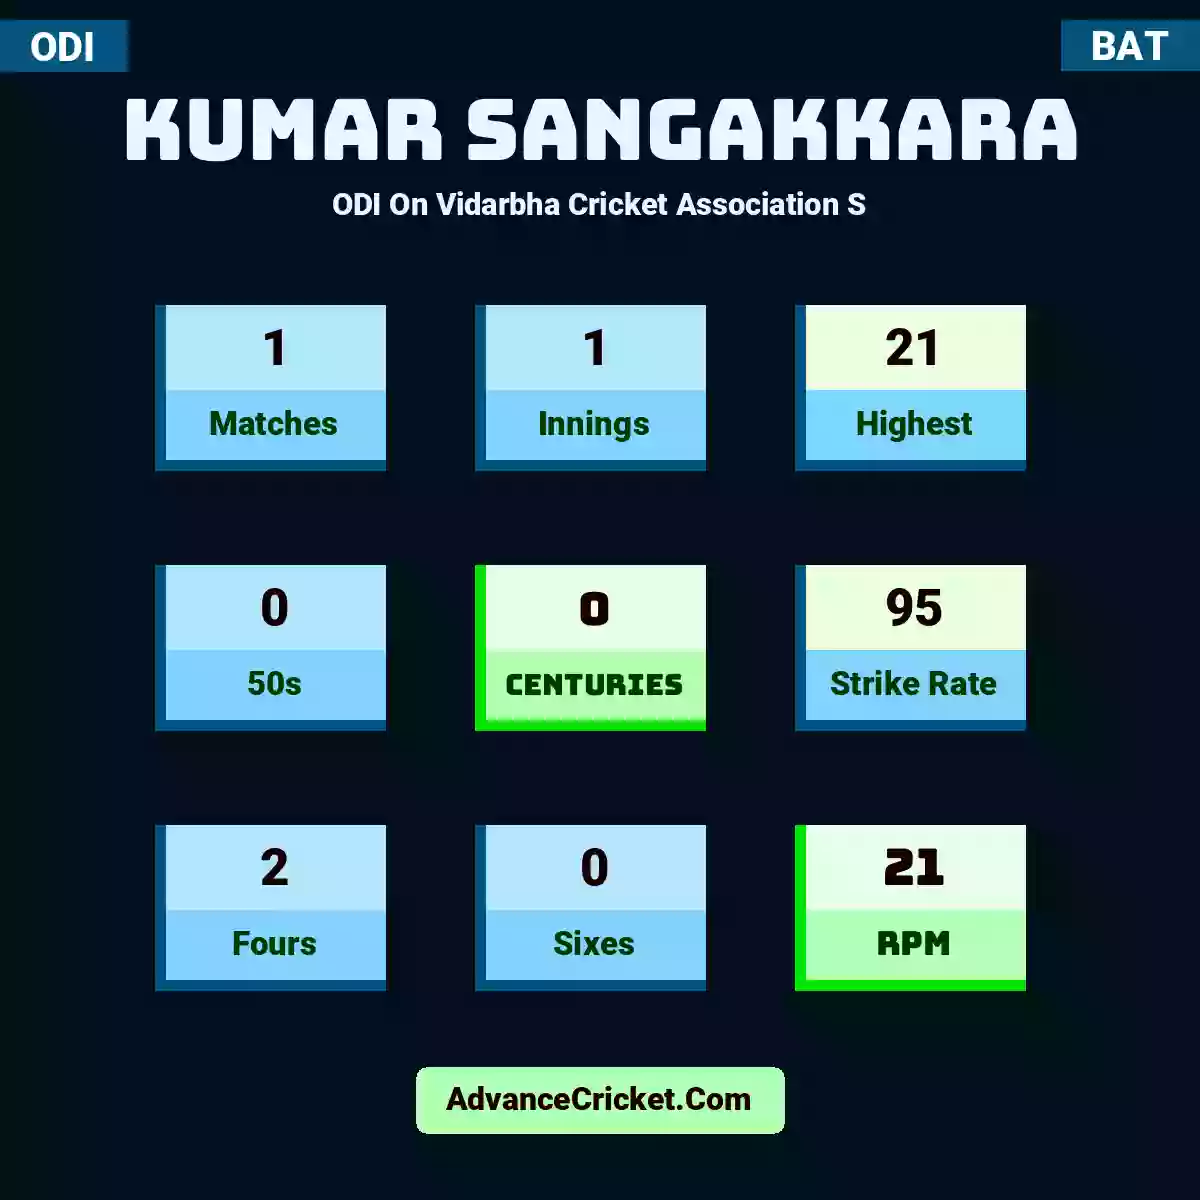 Kumar Sangakkara ODI  On Vidarbha Cricket Association S, Kumar Sangakkara played 1 matches, scored 21 runs as highest, 0 half-centuries, and 0 centuries, with a strike rate of 95. K.Sangakkara hit 2 fours and 0 sixes, with an RPM of 21.